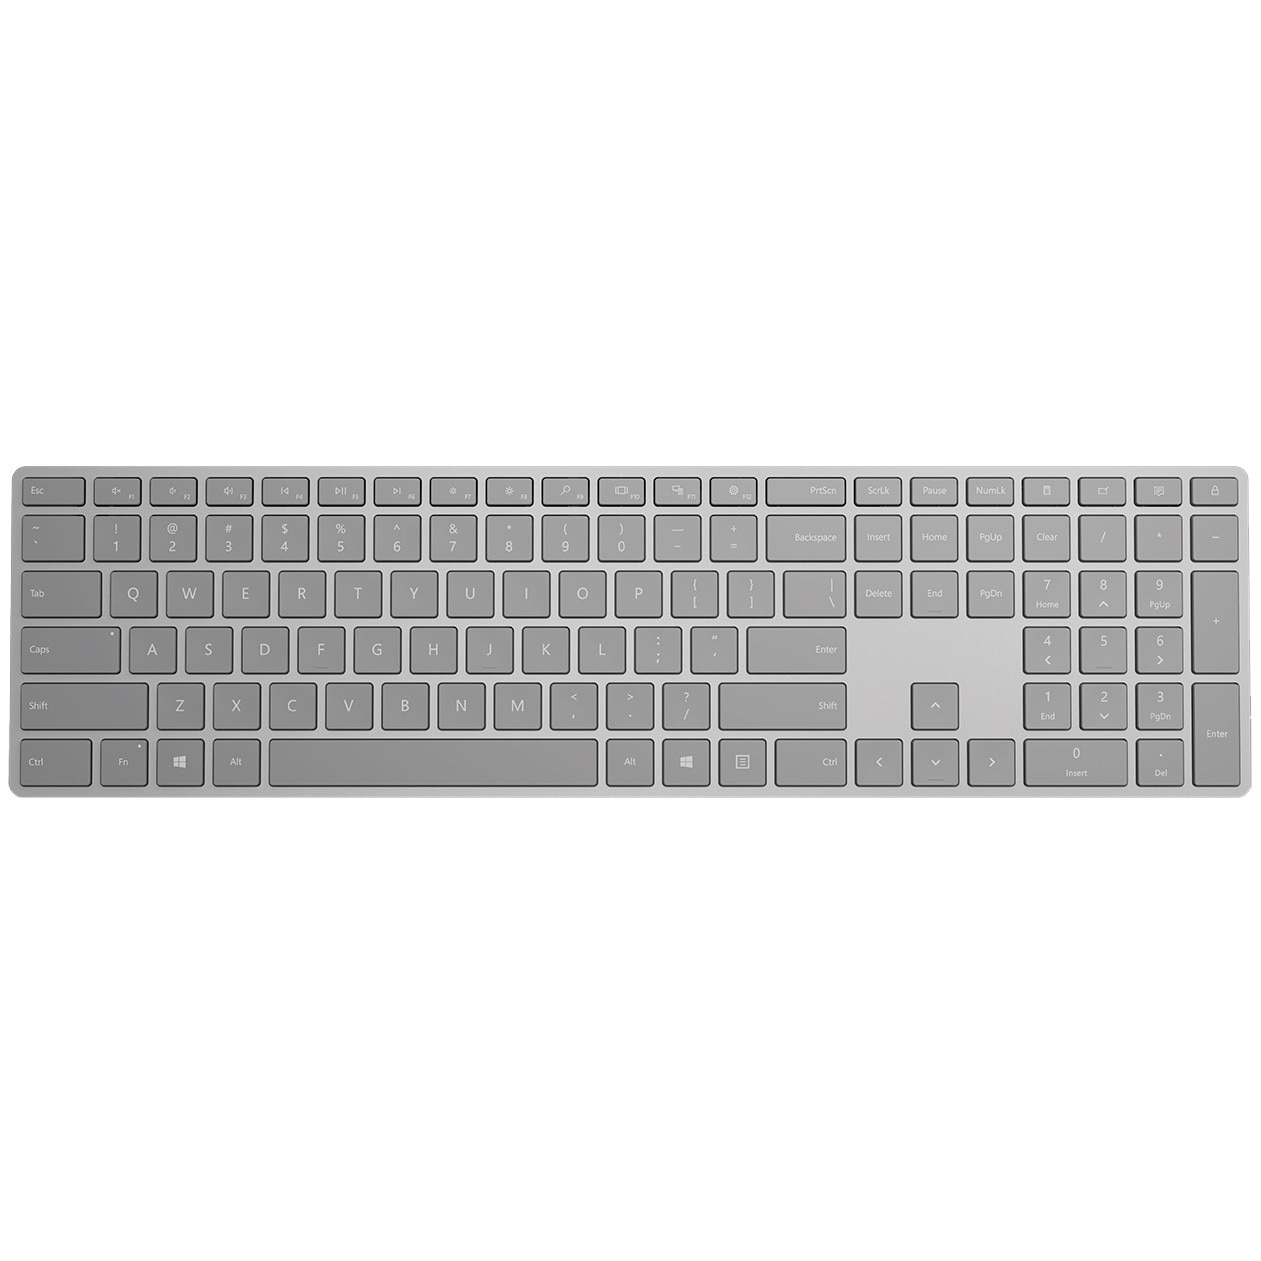 Microsoft Surface trådløst tastatur (lys grå) - Mus og tastatur - Elkjøp